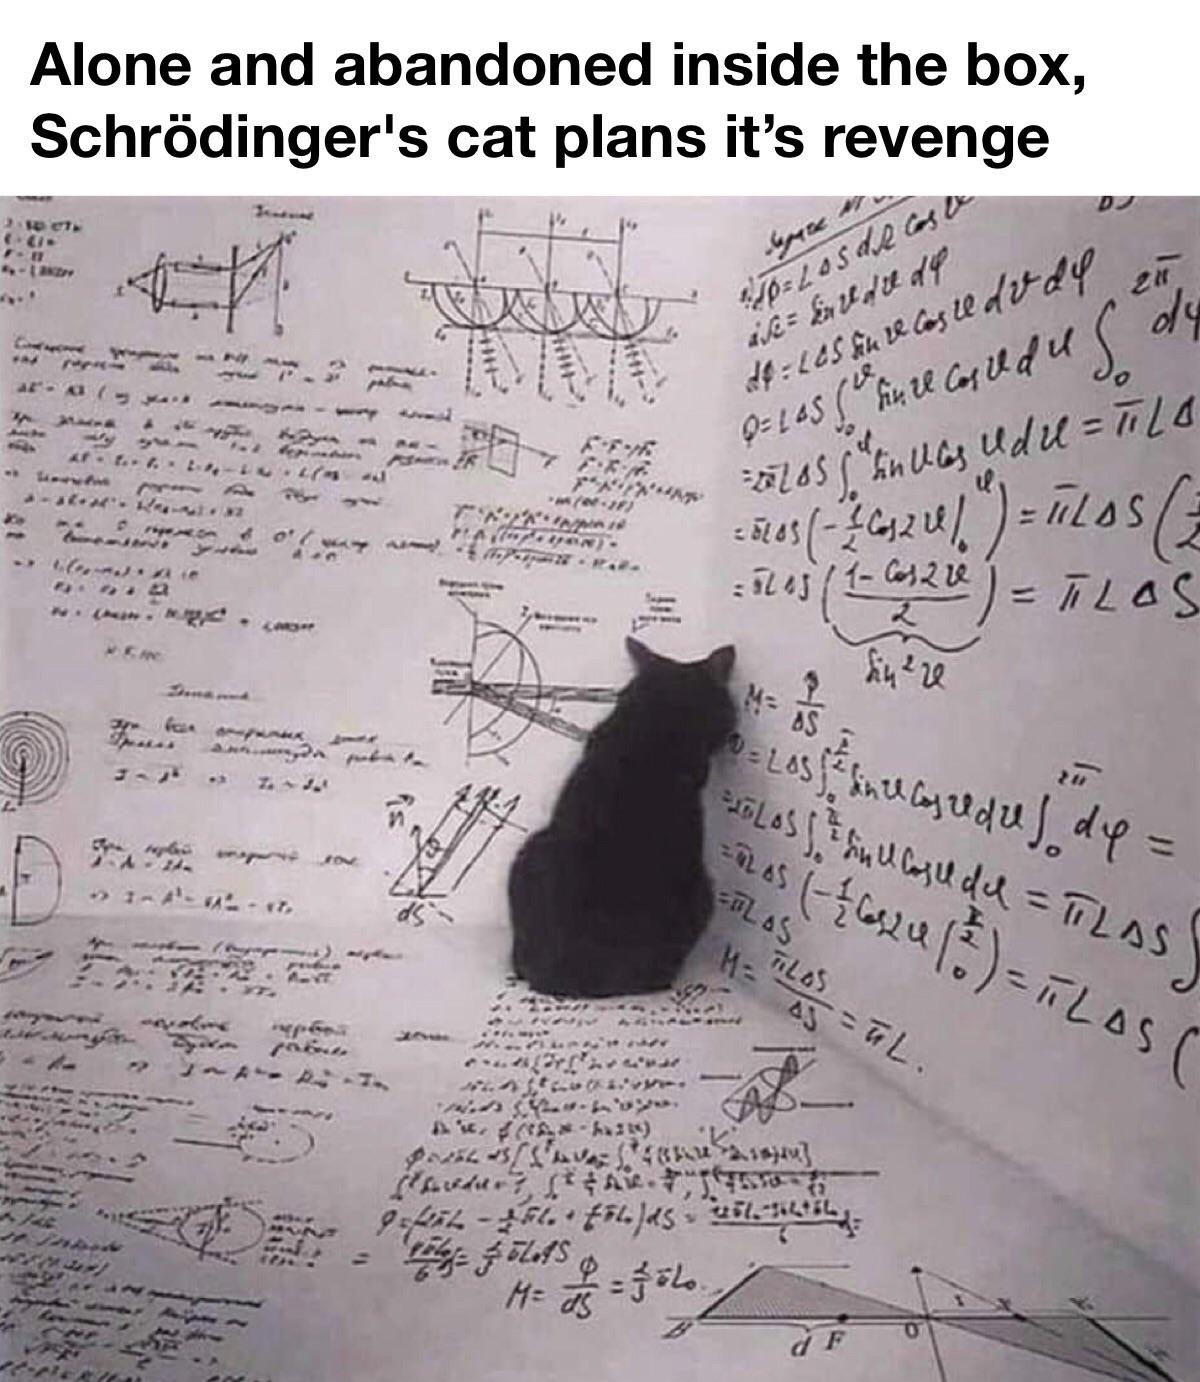 dank memes - funny memes - schrodinger's cat revenge - Alone and abandoned inside the box, Schrdinger's cat plans it's revenge D Tot Cu Fi 4 apare K Terus Las de casa 20 are inedite de d1 165 un recoste do dy 0 165 un record des de uf. fol. L413 5570S S